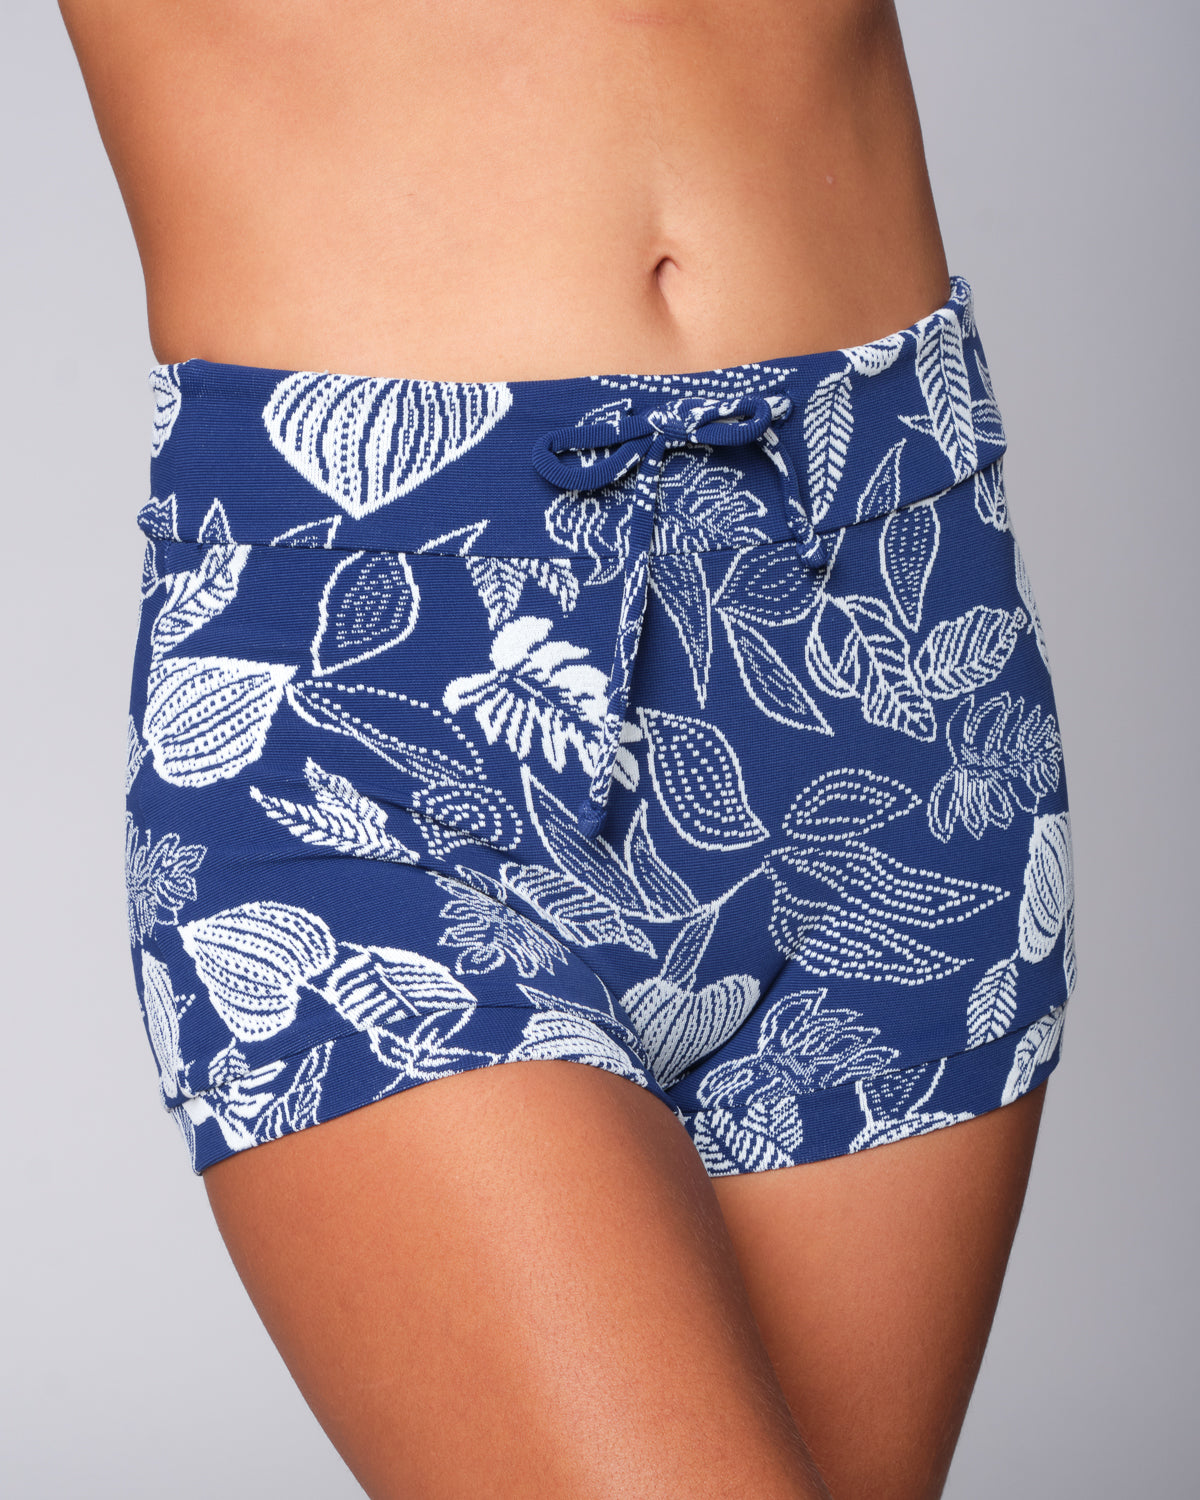 Emma Gaia Blue White Floral Pattern Swim Suit Shorts Bottoms